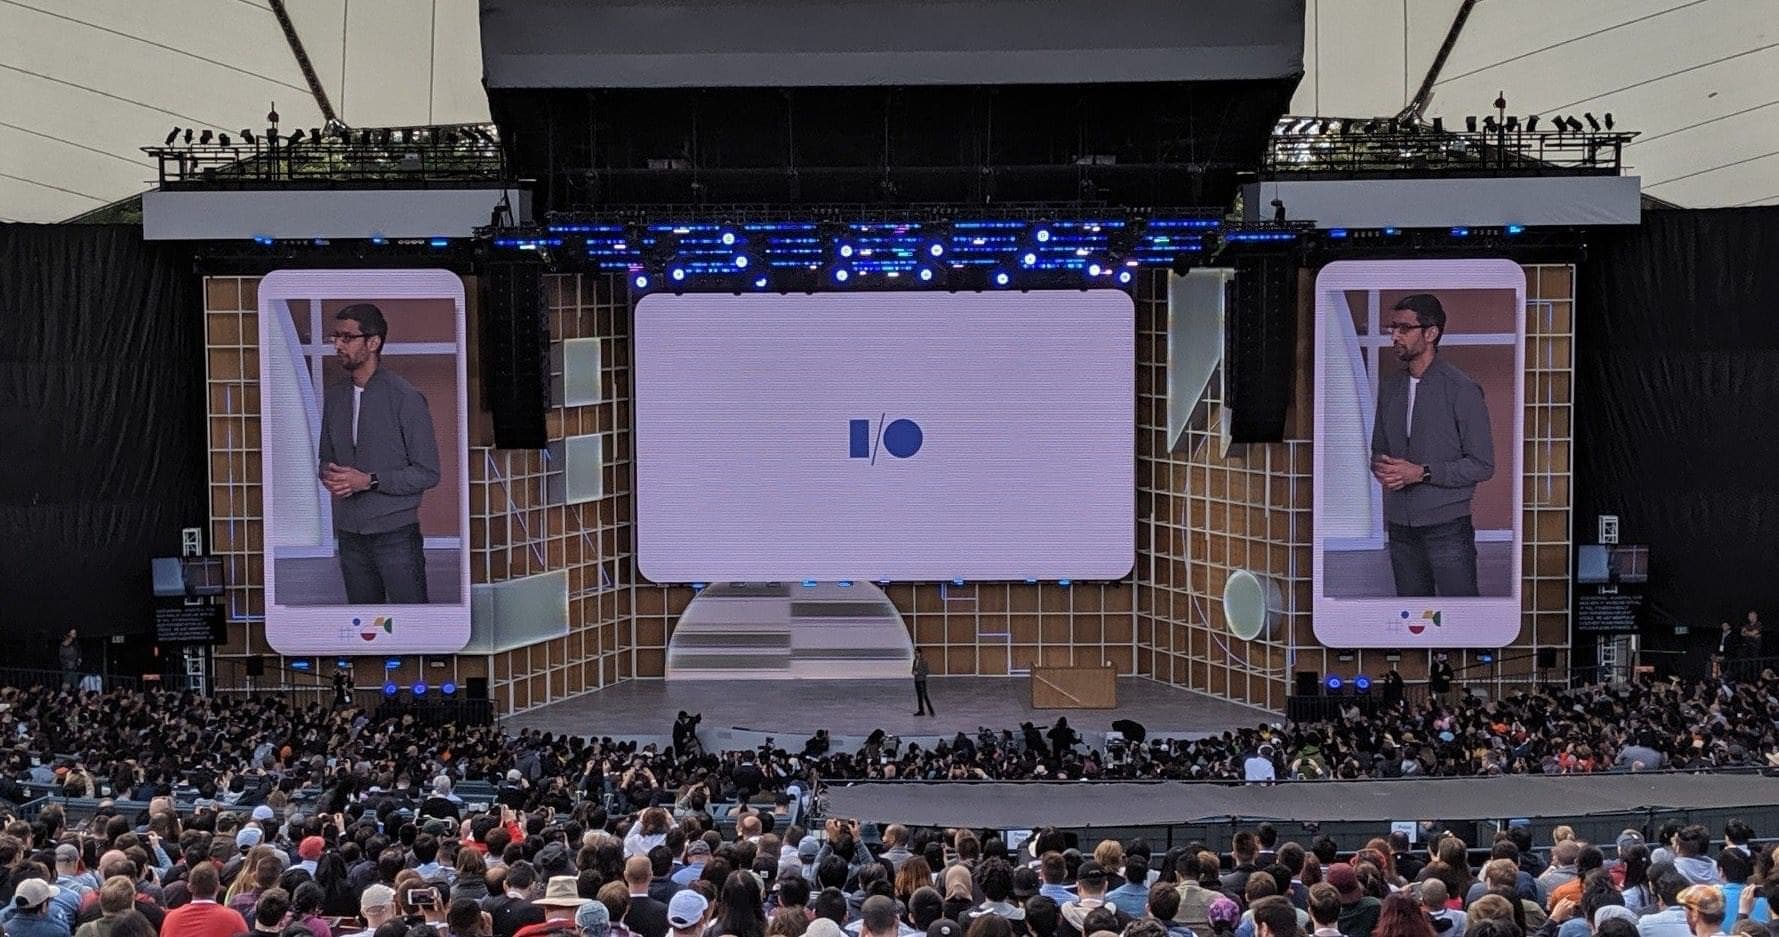 สรุปงาน Google I/O 2019 | เปิดตัว Pixel 3a รุ่นกลาง อัปเกรดฟีเจอร์ให้ Search และ Assistant 1